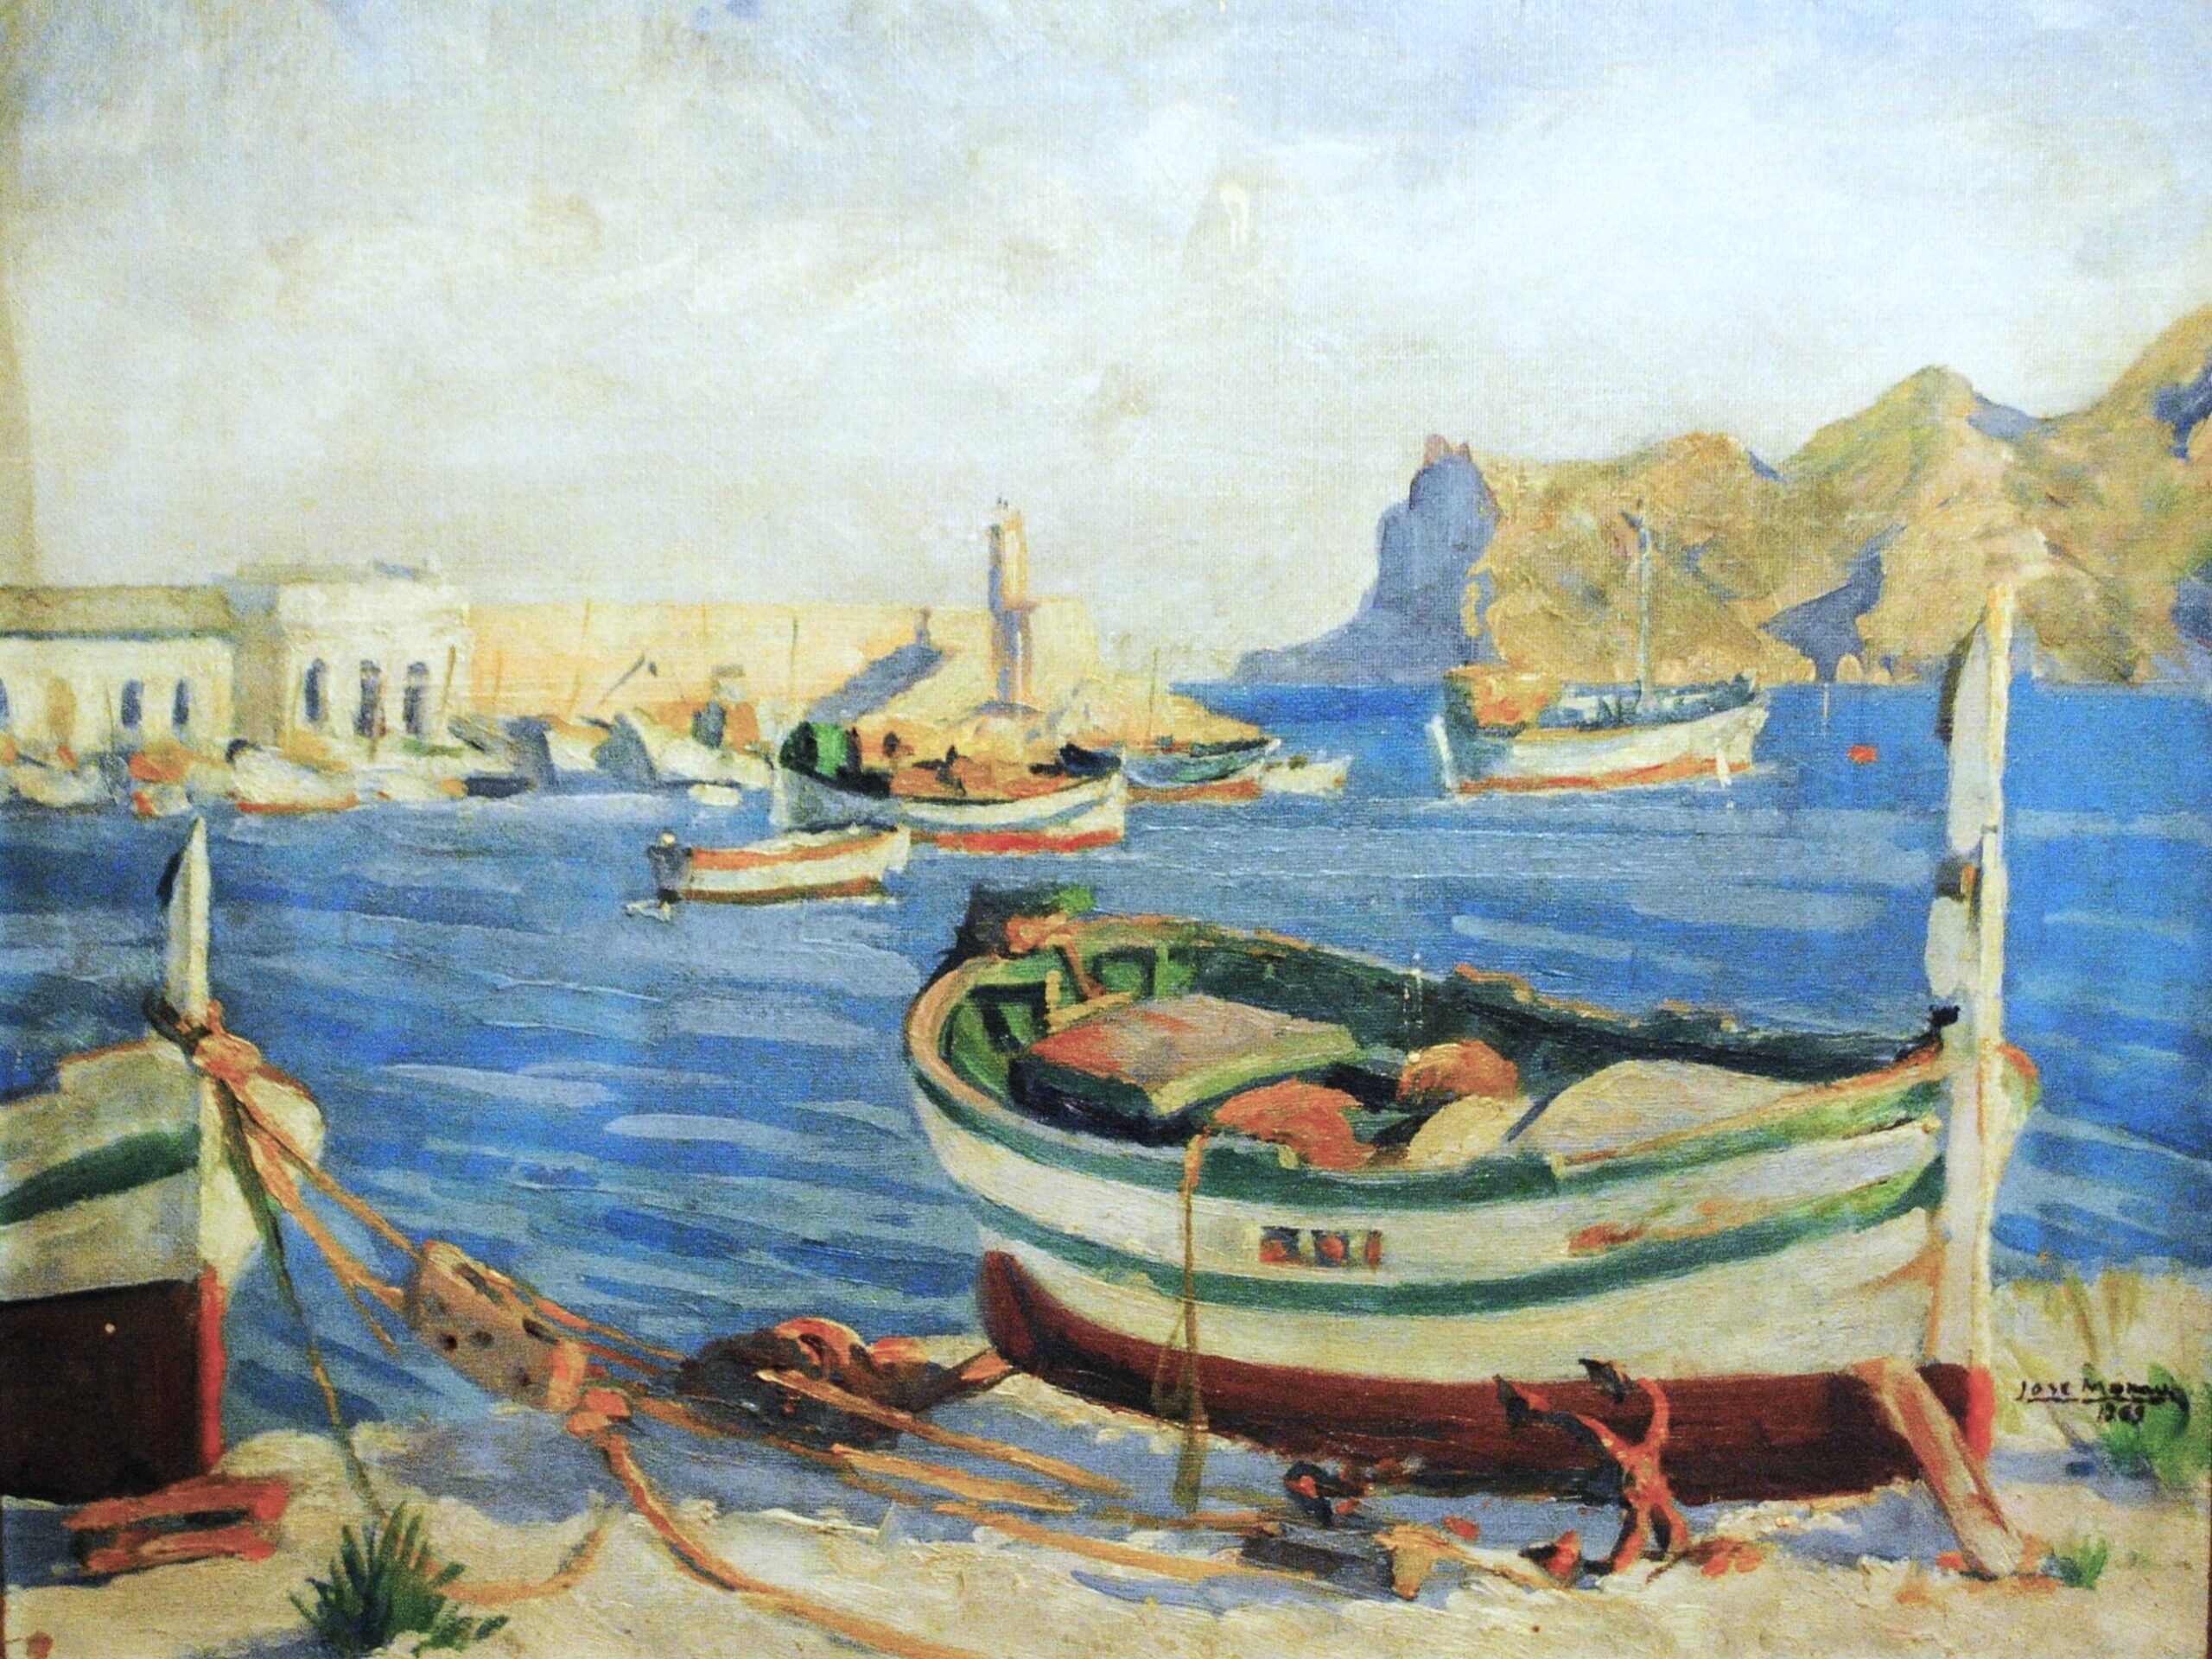 Pintura de José Manaut titulada Barcas en puerto, 1963. Óleo sobre lienzo.